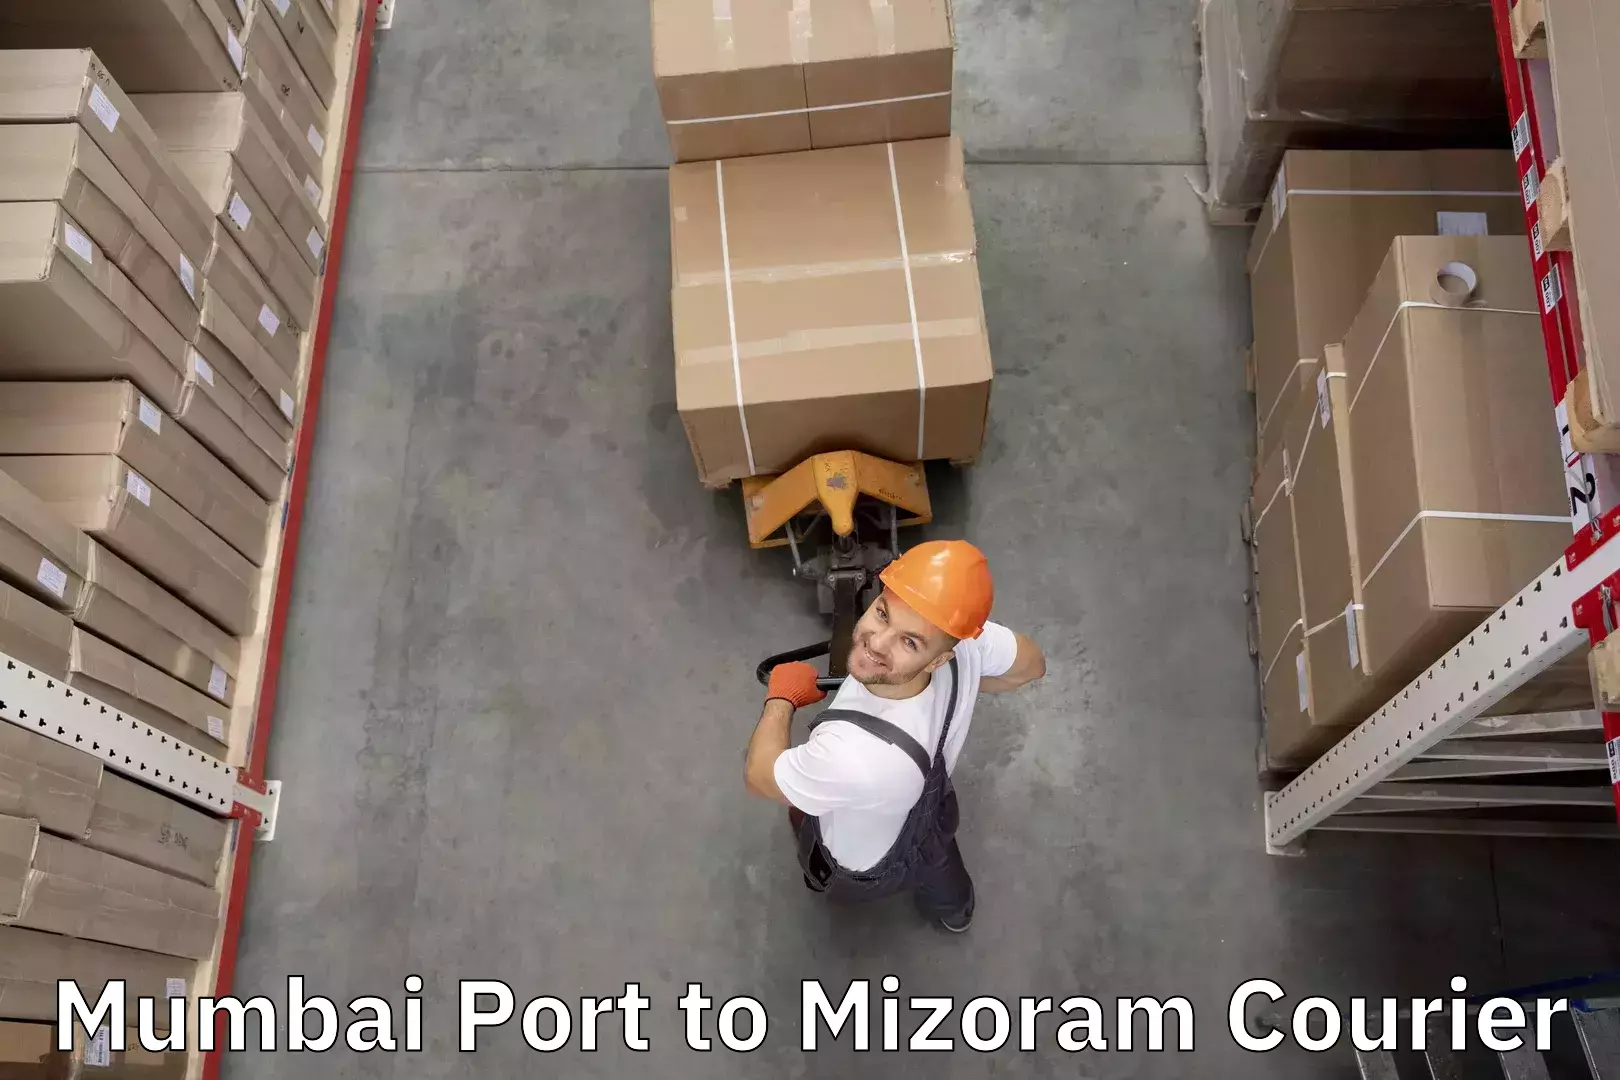 Door-to-door baggage service Mumbai Port to Mizoram